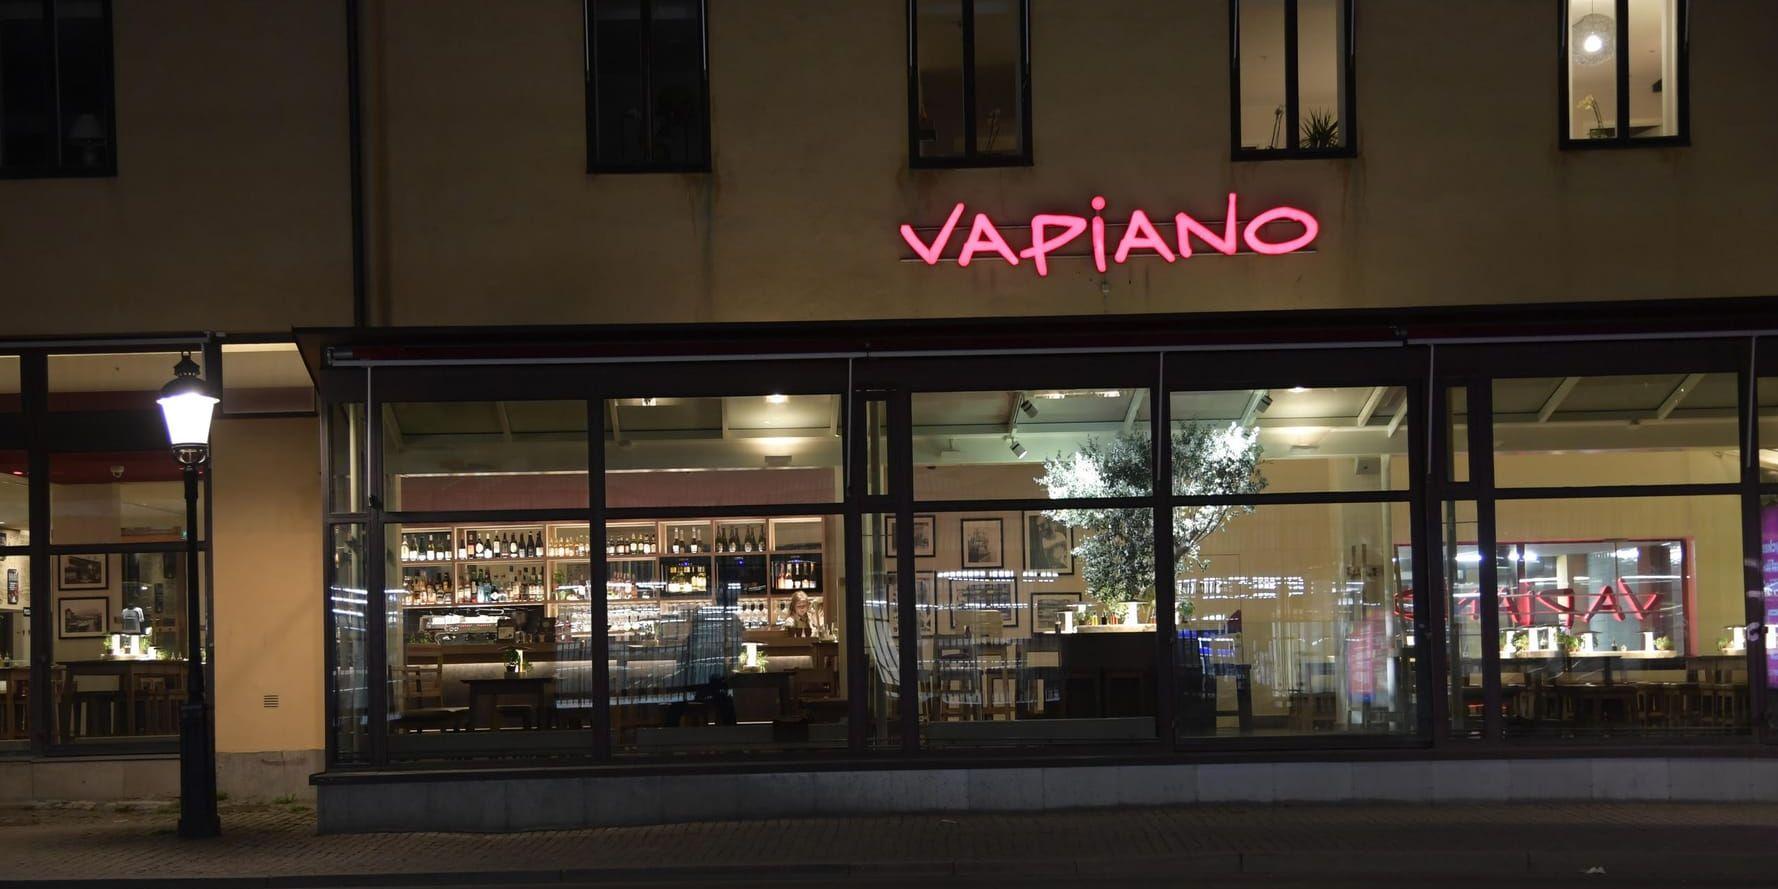 Vapiano varnar för oväntat svagt resultat och ökar fokus på lönsamhet i sin strategi. Arkivbild.